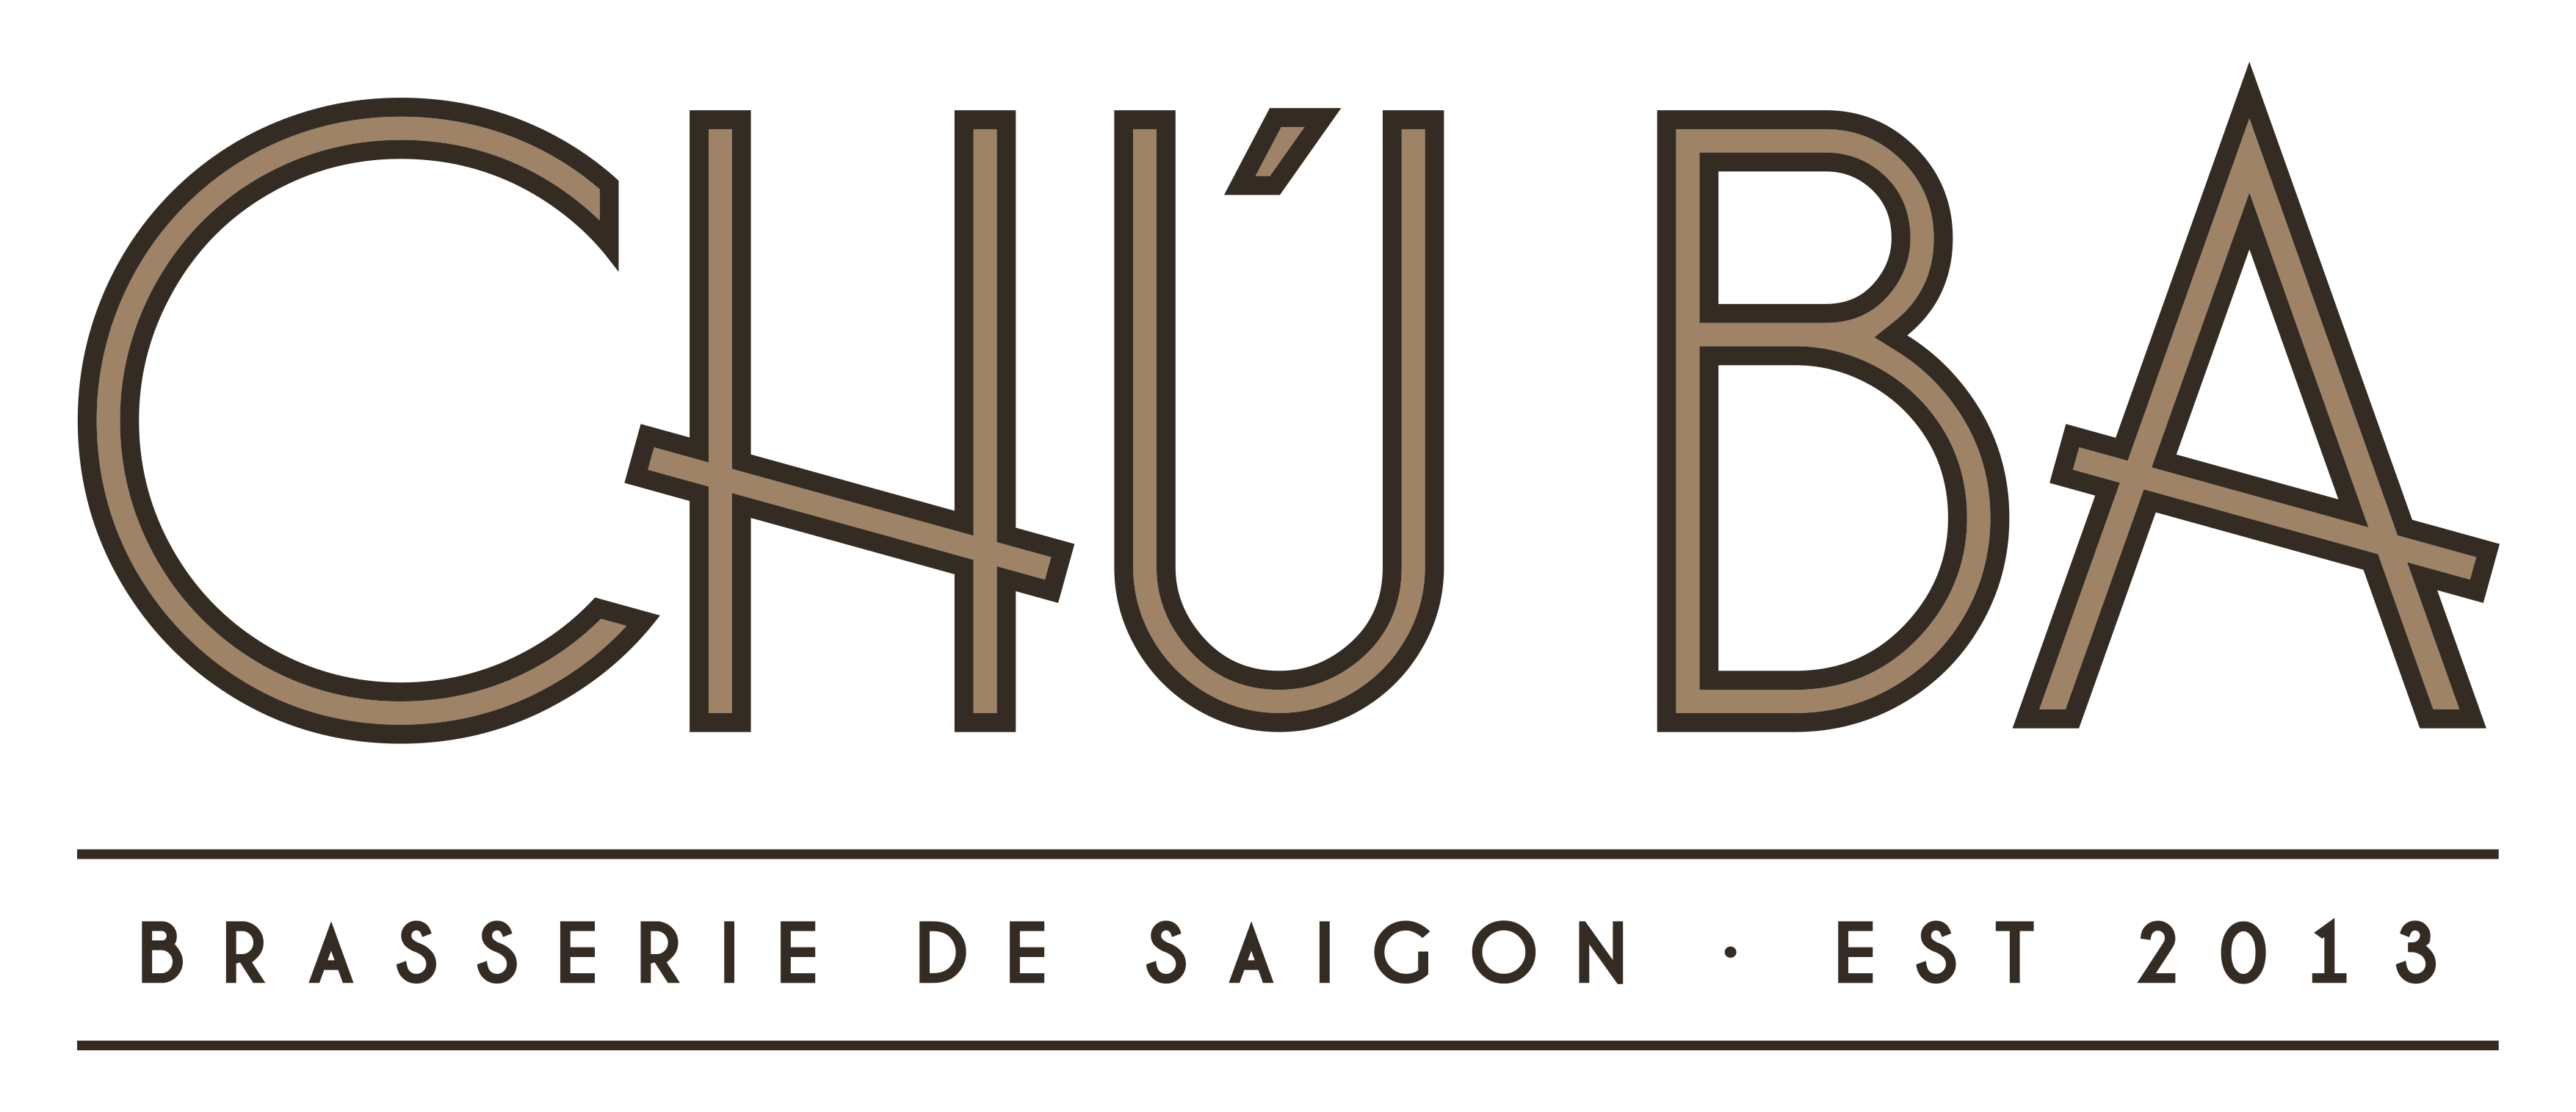 Chu-Ba Logo